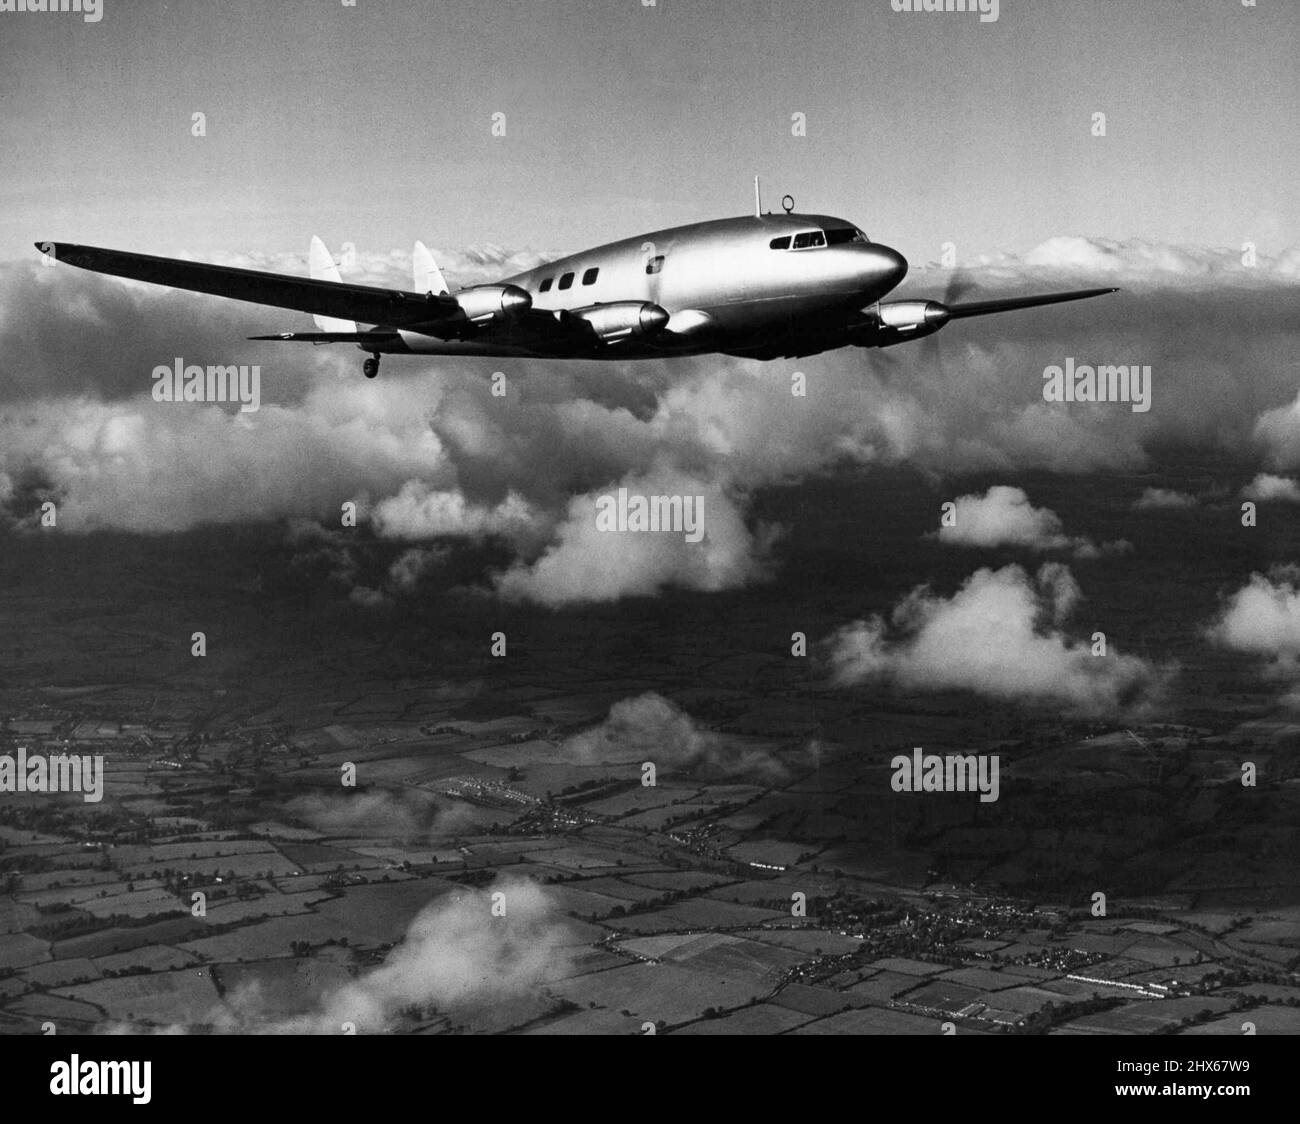 Großbritanniens neuestes Flugzeug -- Imperial Airways hat fünf De Havilland Albatross-Eindecker bestellt (vier Gipsy-zwölf 550 PS-Triebwerke), von denen jeder etwa 20 Passagiere und eine große Ladung Mails transportiert. Kreuzfahrt bei deutlich mehr als 200 m.p.h. (322 km/h.) der Albatross ist heute das schnellste viermotorige Verkehrsflugzeug der Welt. Das Foto zeigt den ersten Albatross über den Wolken zu Beginn der Höhenversuche, die durchgeführt wurden, um die Steigerungsrate, die erreichbare Decke und den Motor zu überprüfen Stockfoto